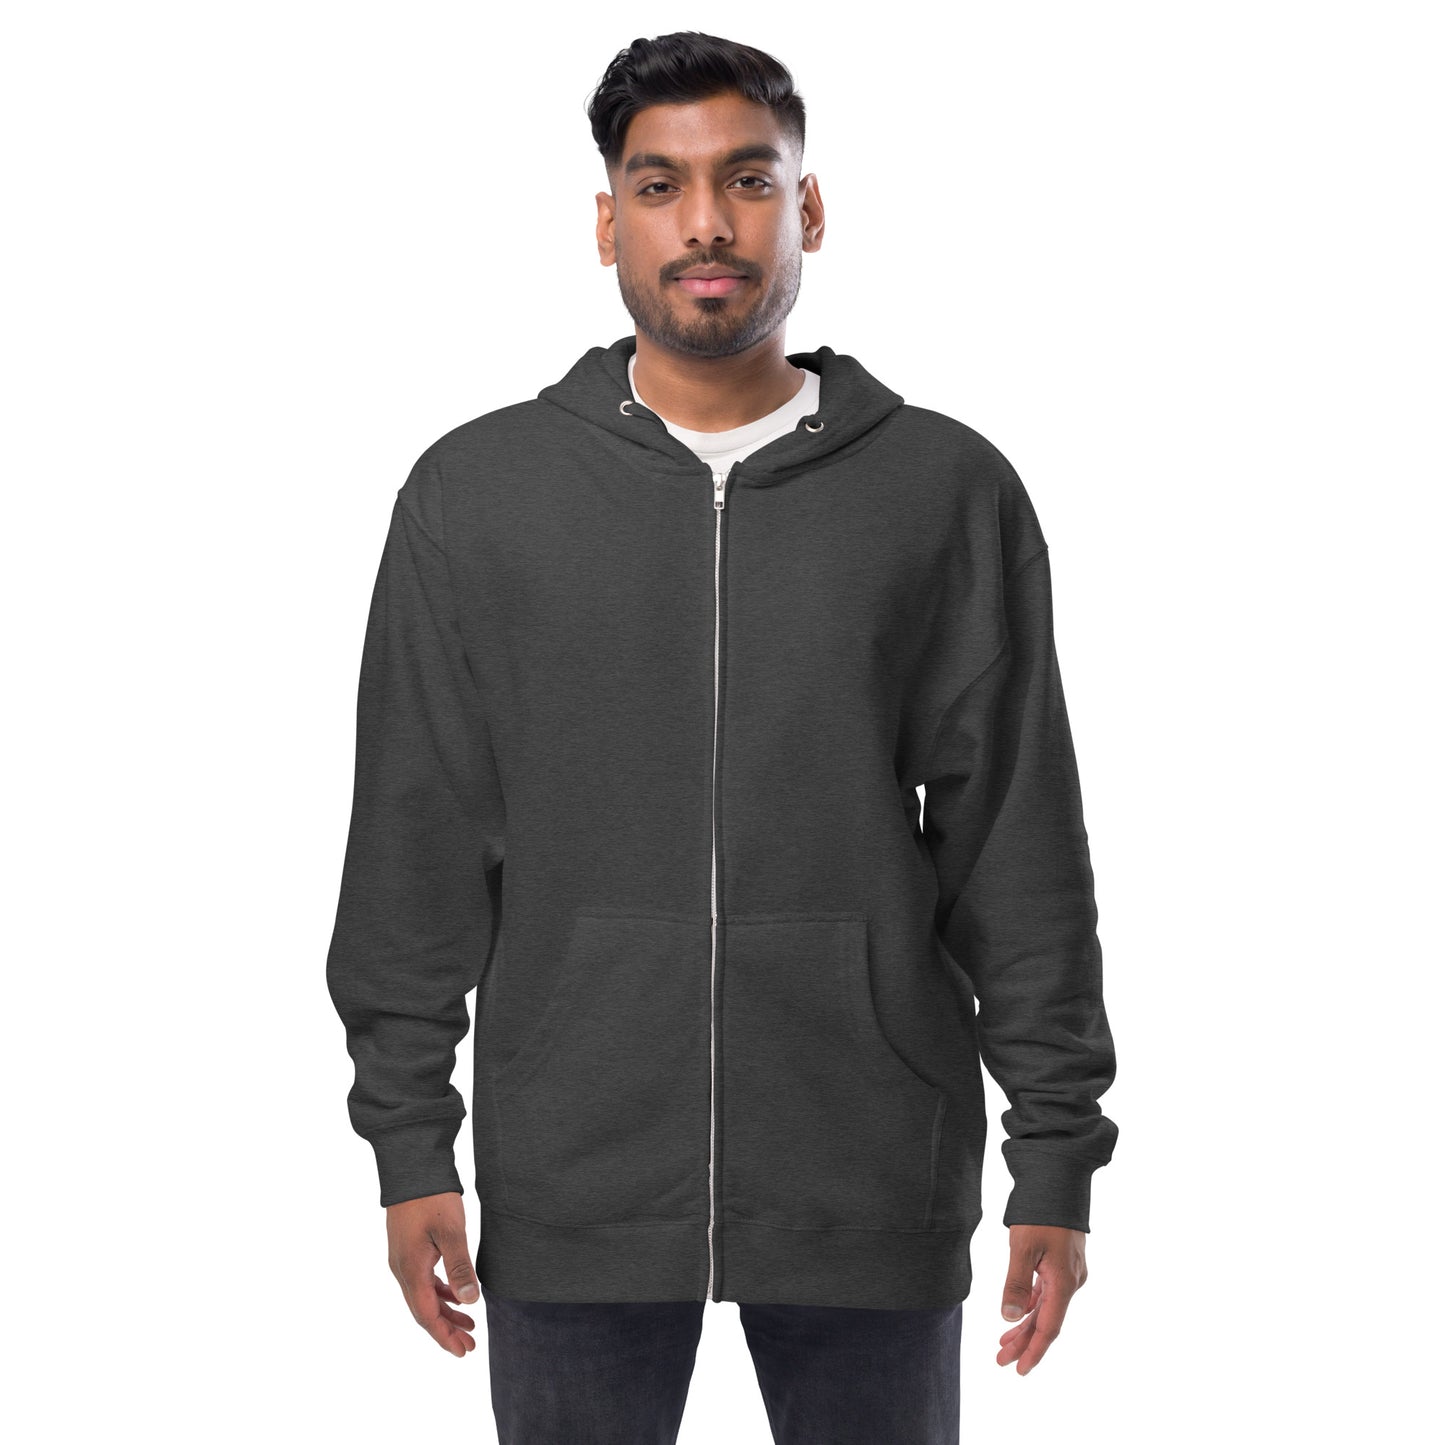 Ursa Minor - Unisex fleece zip up hoodie